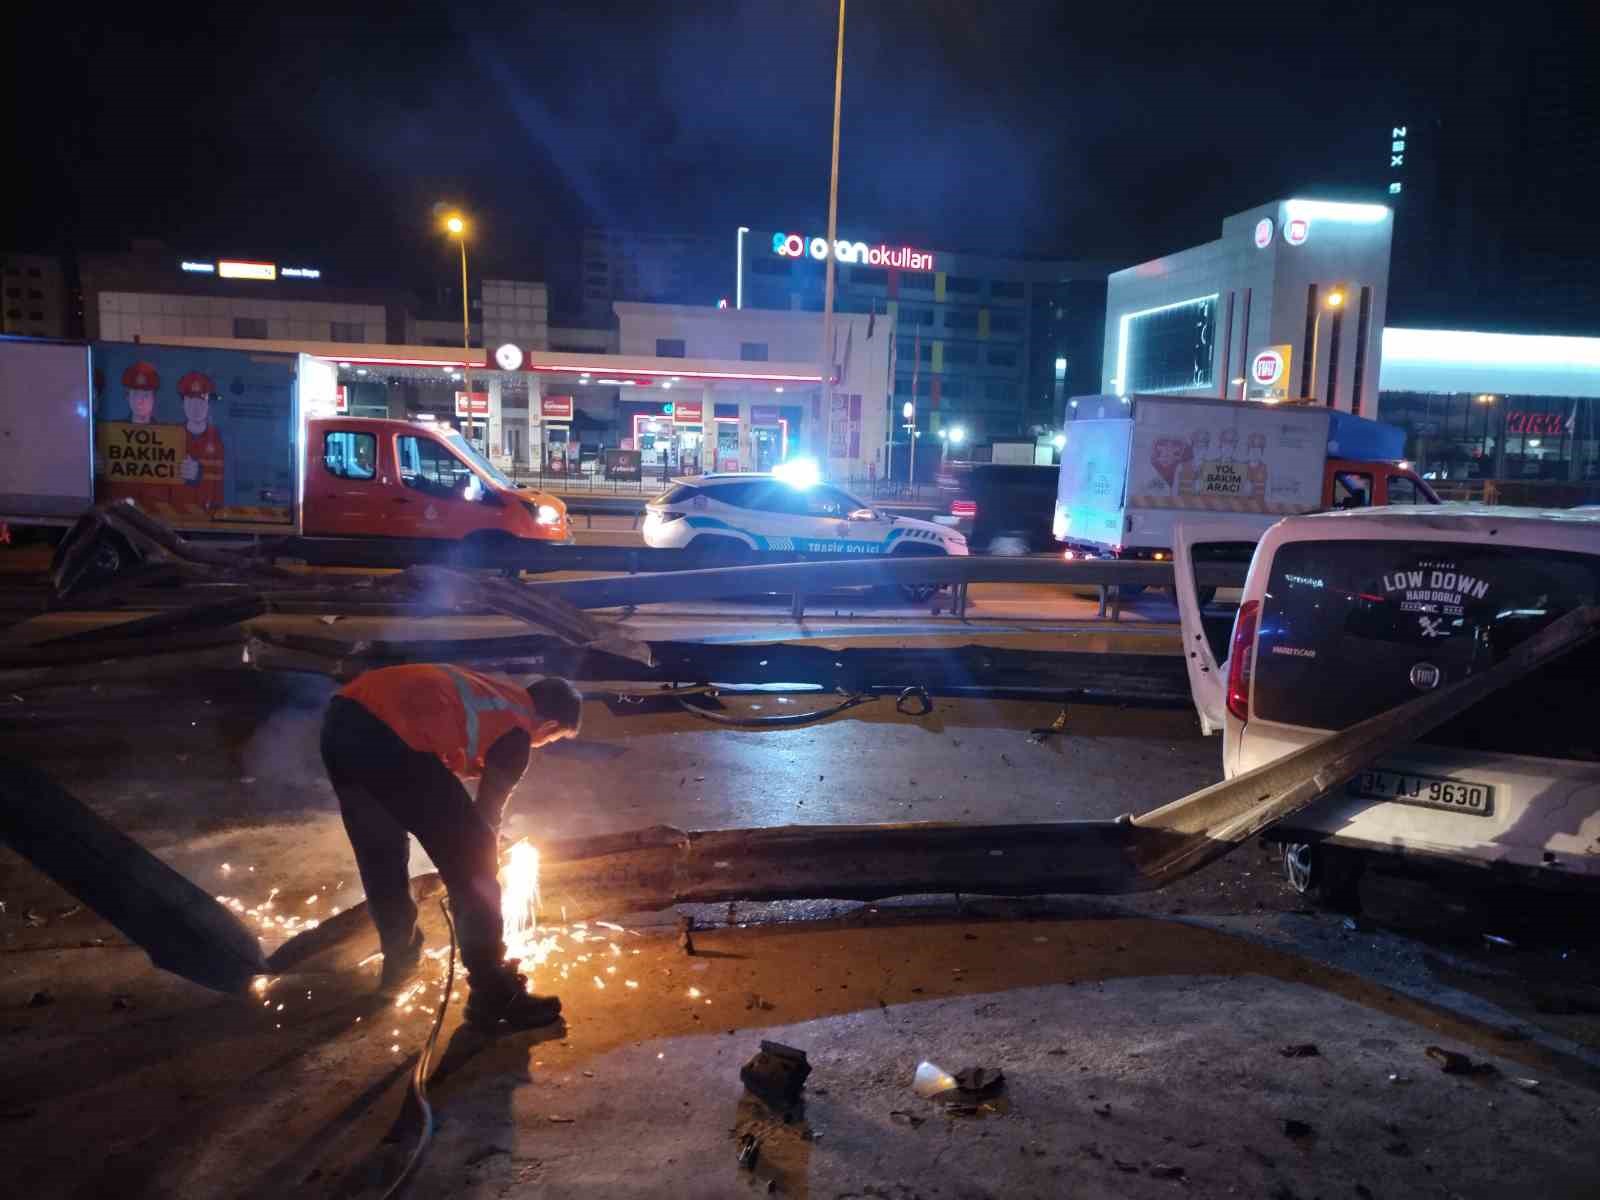 Kartal’da kontrolden çıkan araç bariyerlere ve park halindeki taksiye çarptı: 4 yaralı
